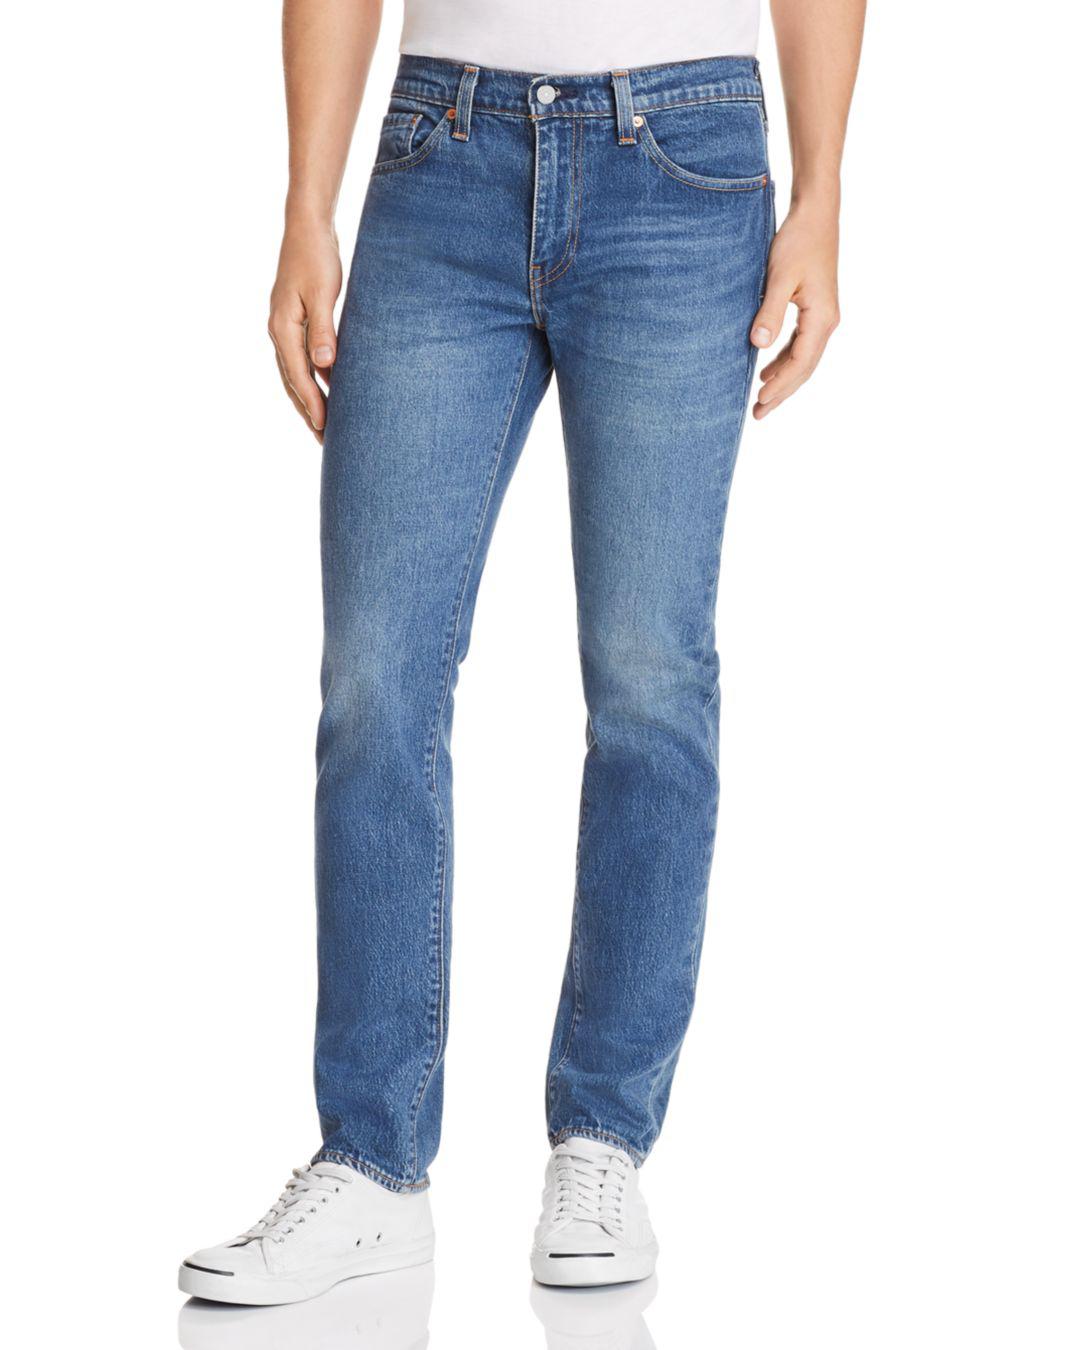 Levi's Denim 511 Slim Fit Jeans In 